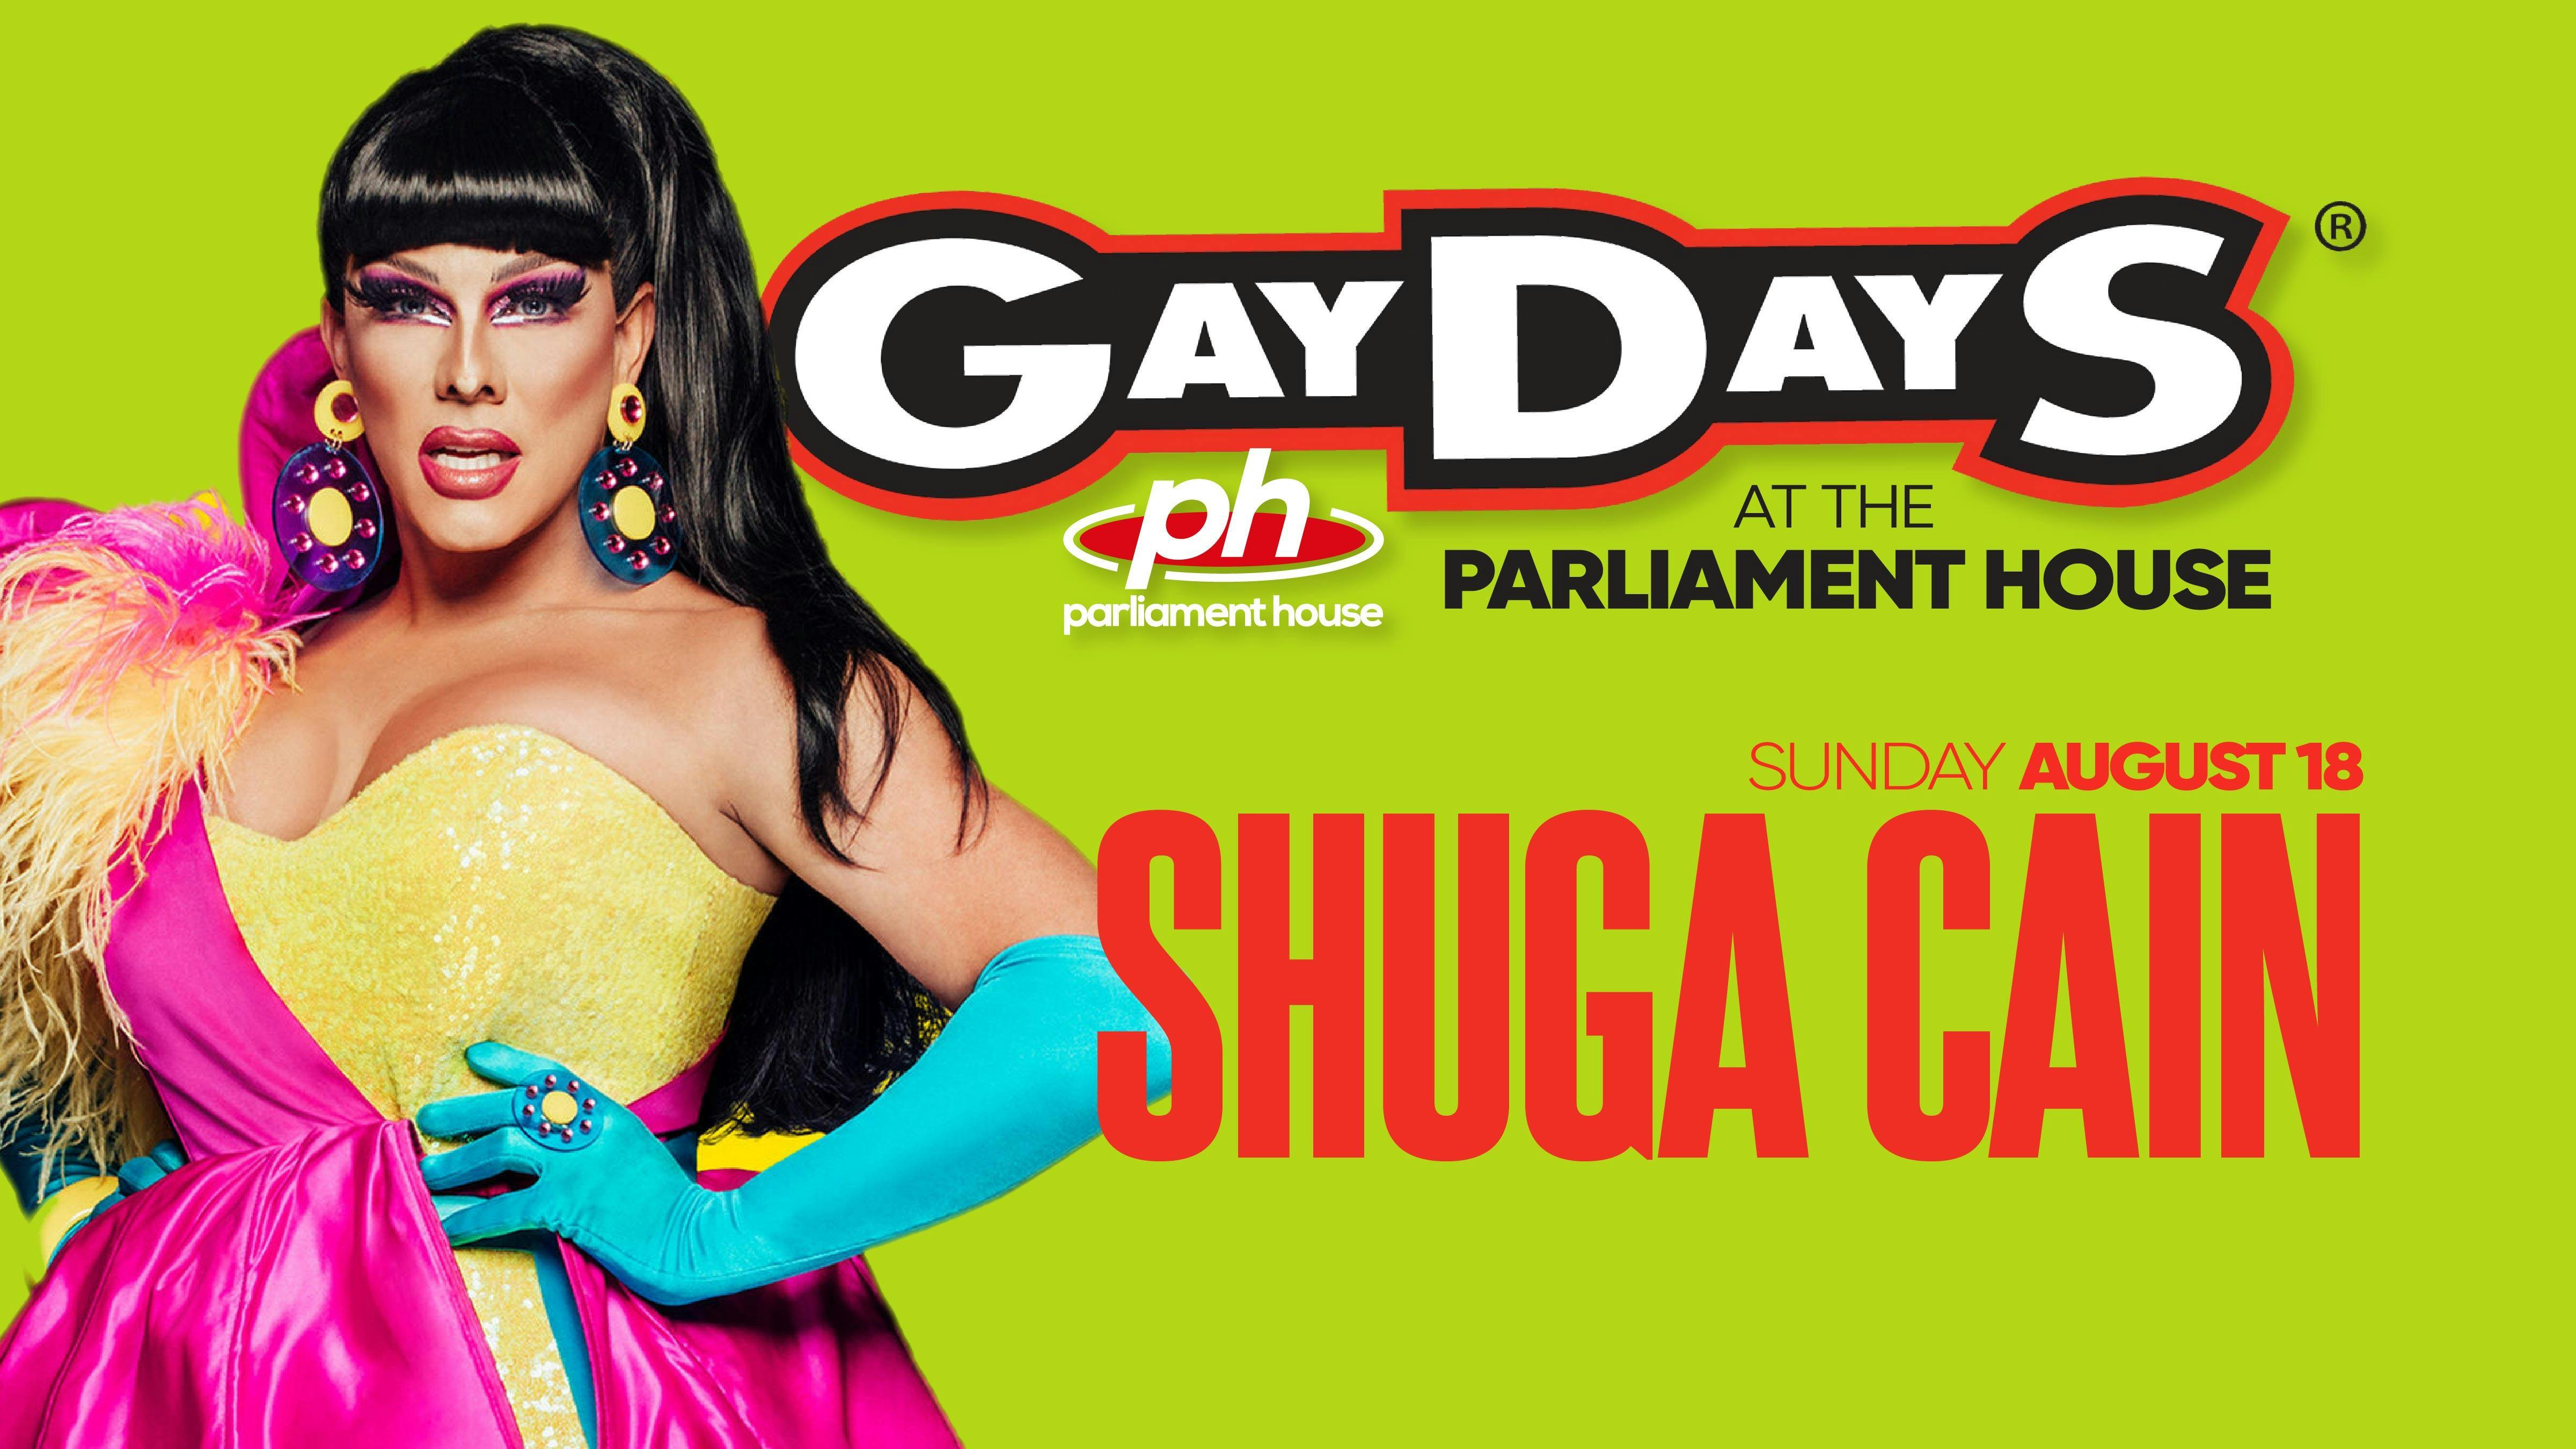 SHUGA CAIN - Gay Days Sunday @ Parliament House